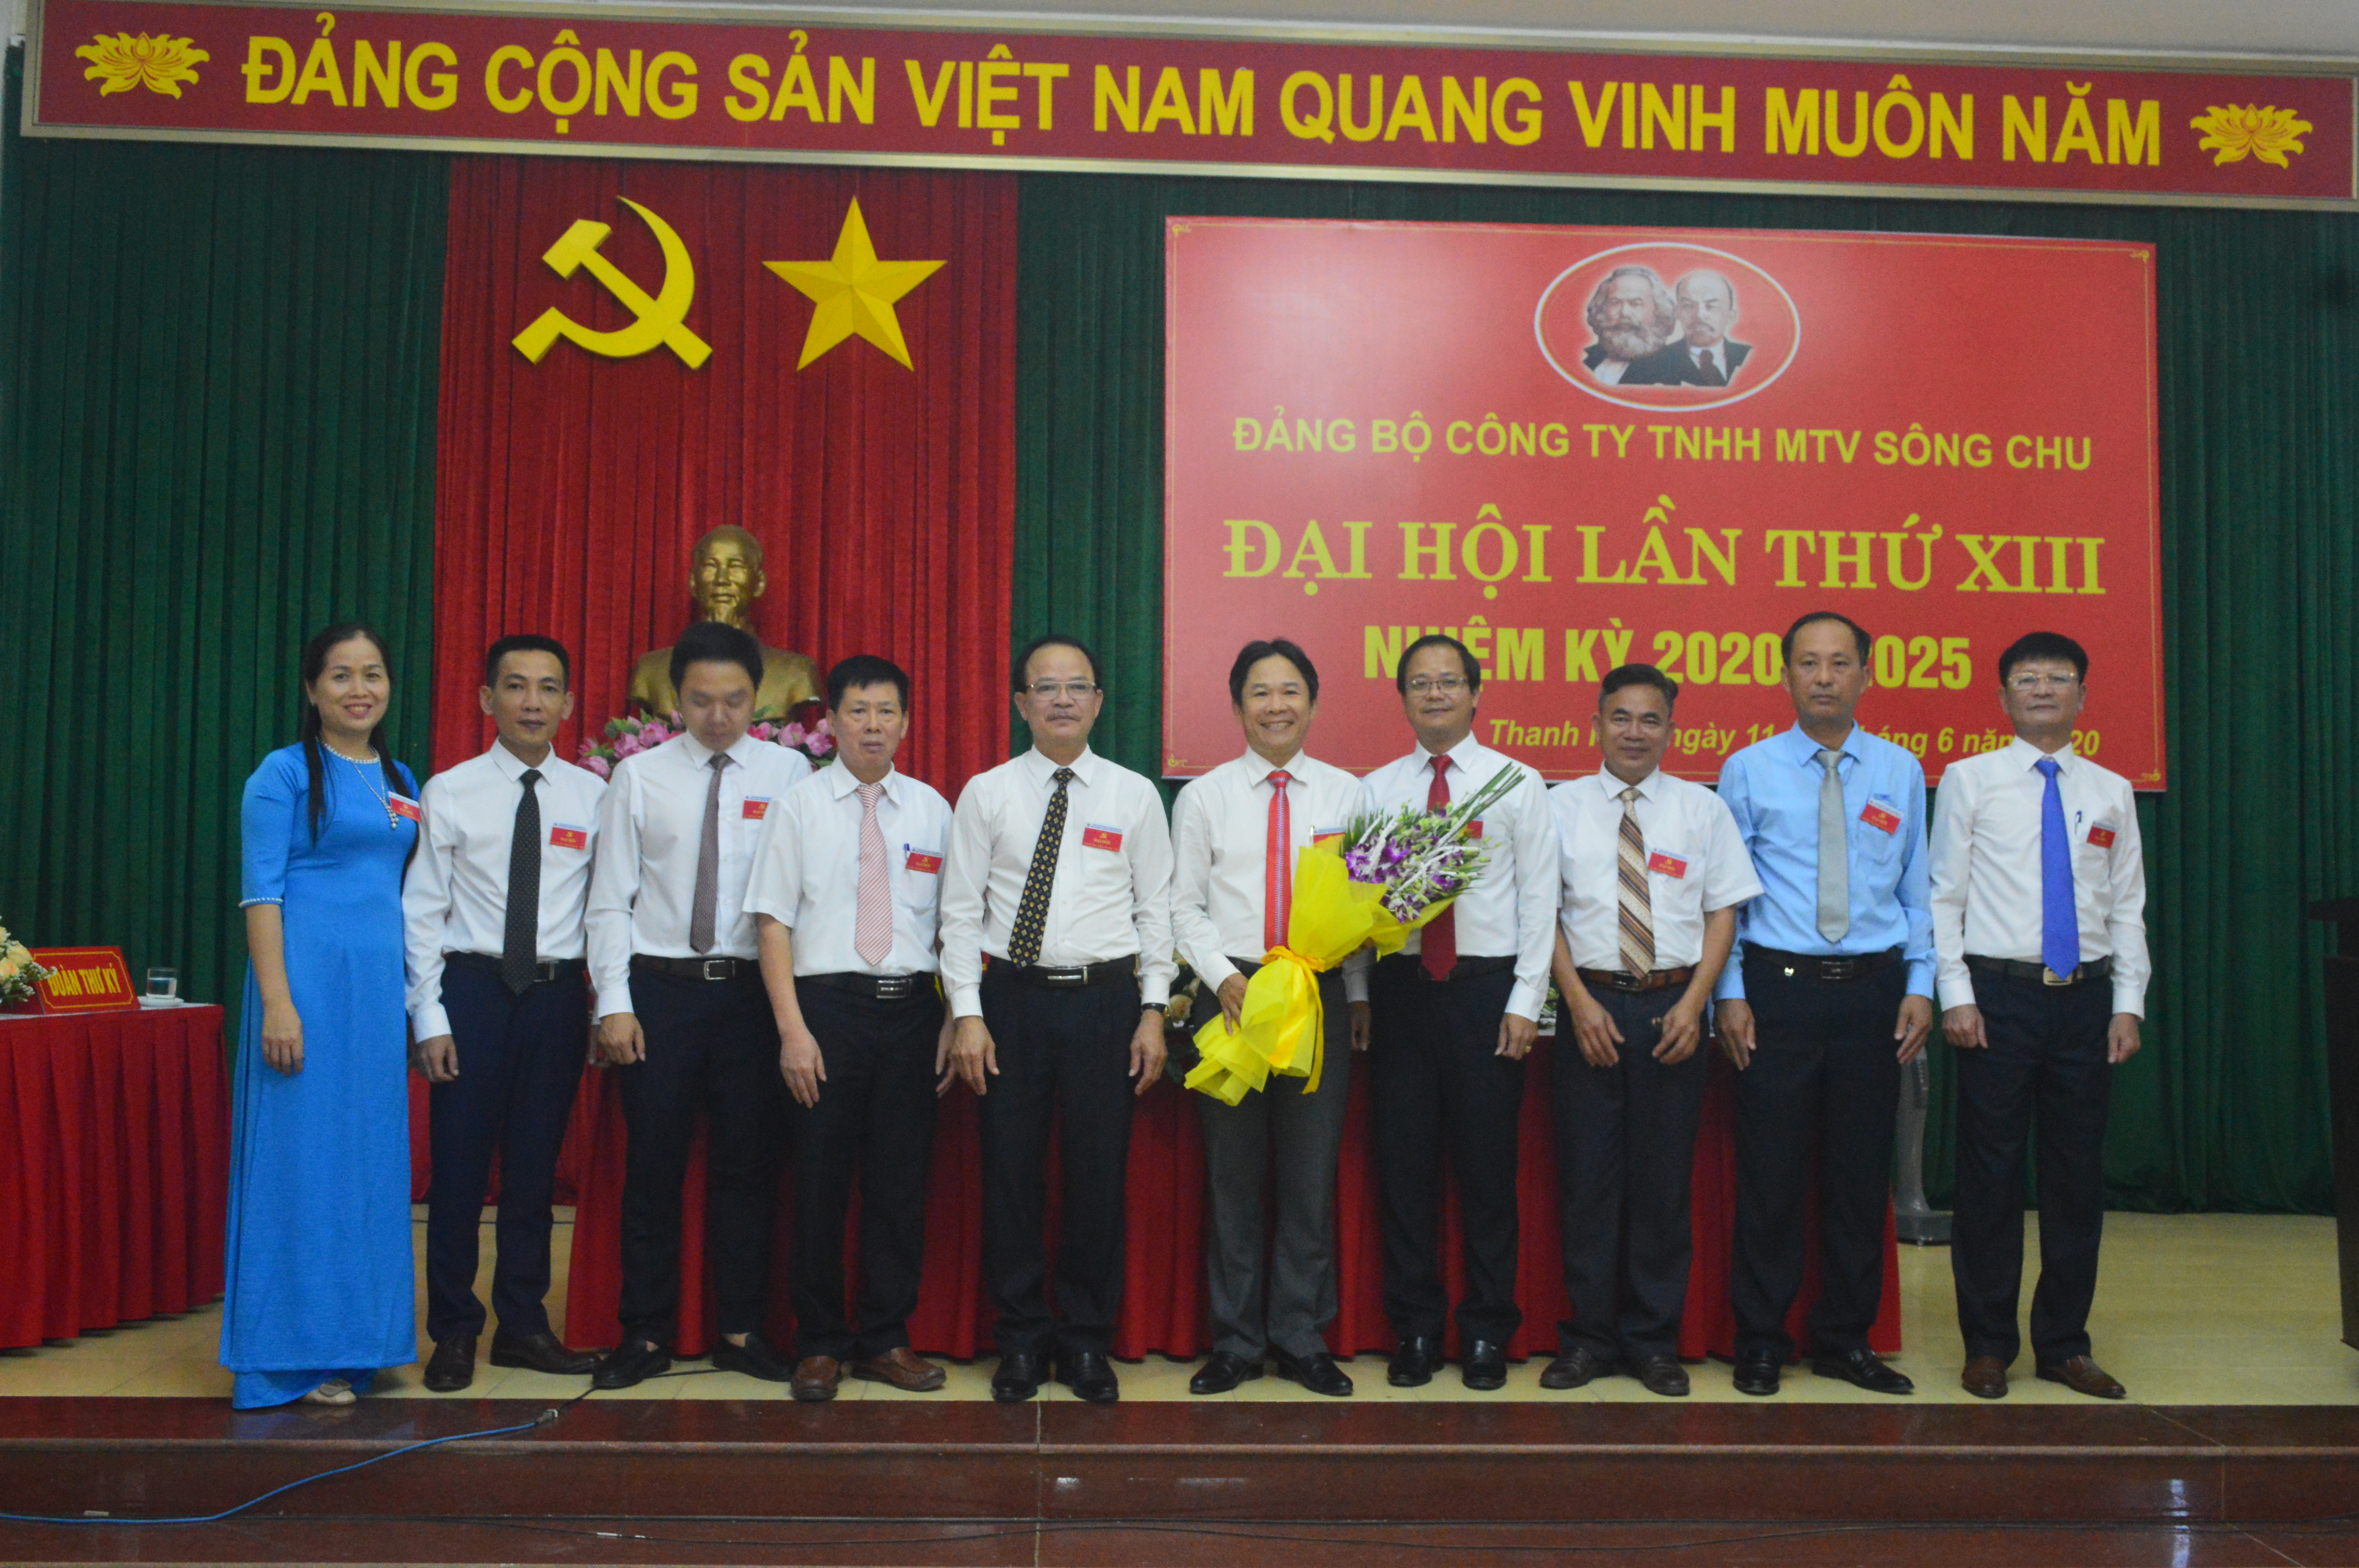 Đại hội Đảng bộ Công ty TNHH MTV Sông Chu, nhiệm kỳ 2020 – 2025